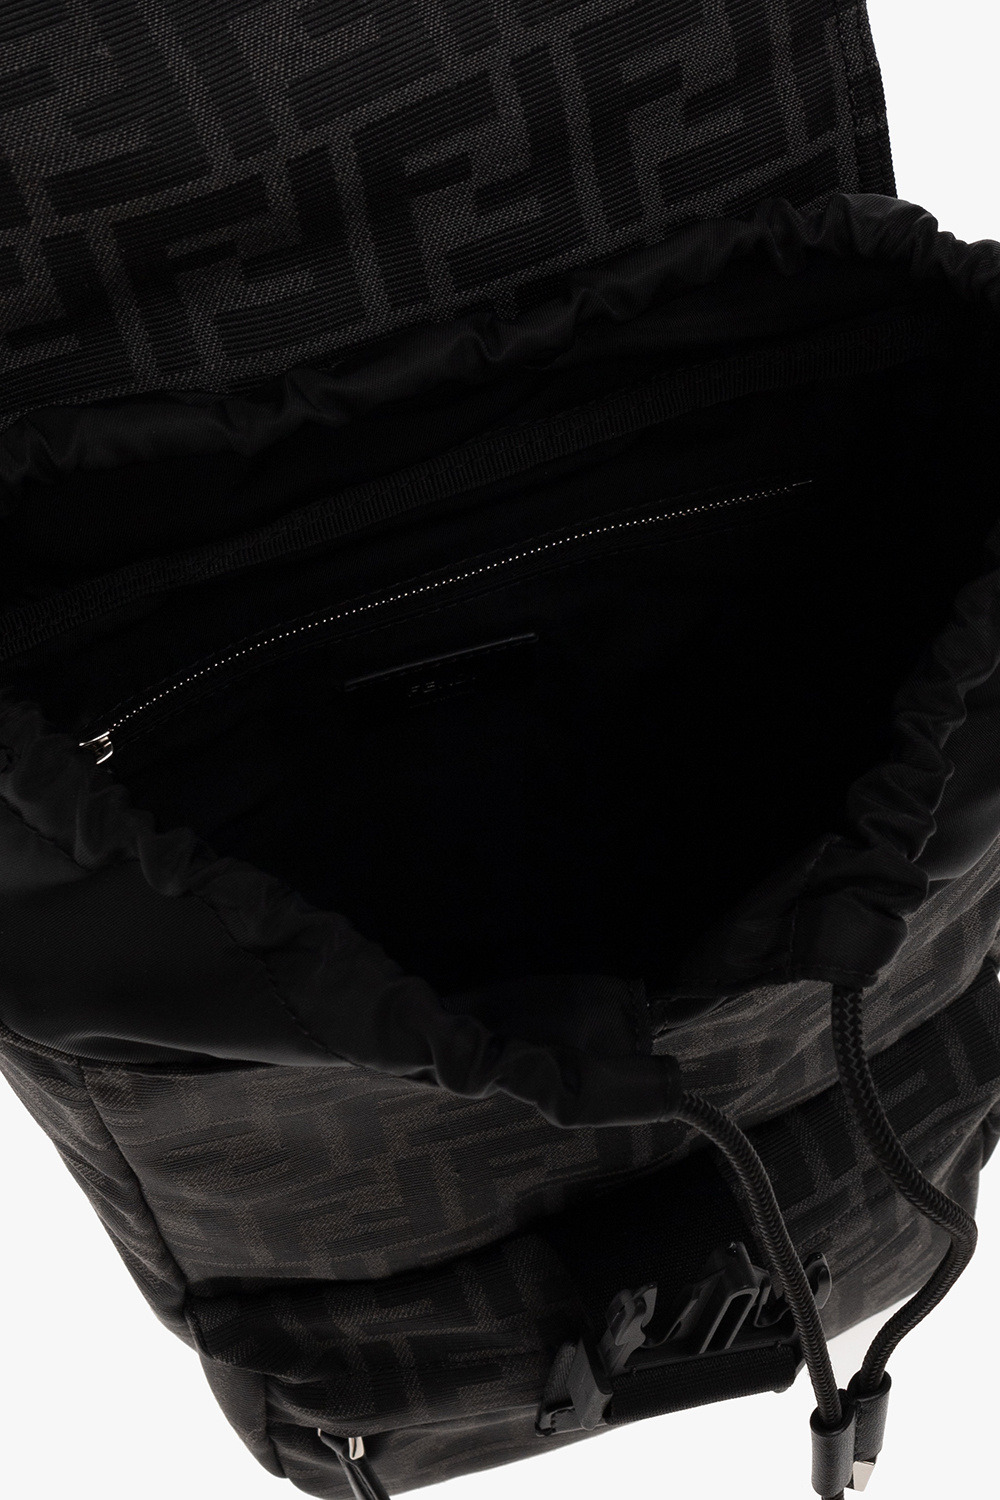 Fendi One-shoulder backpack with monogram